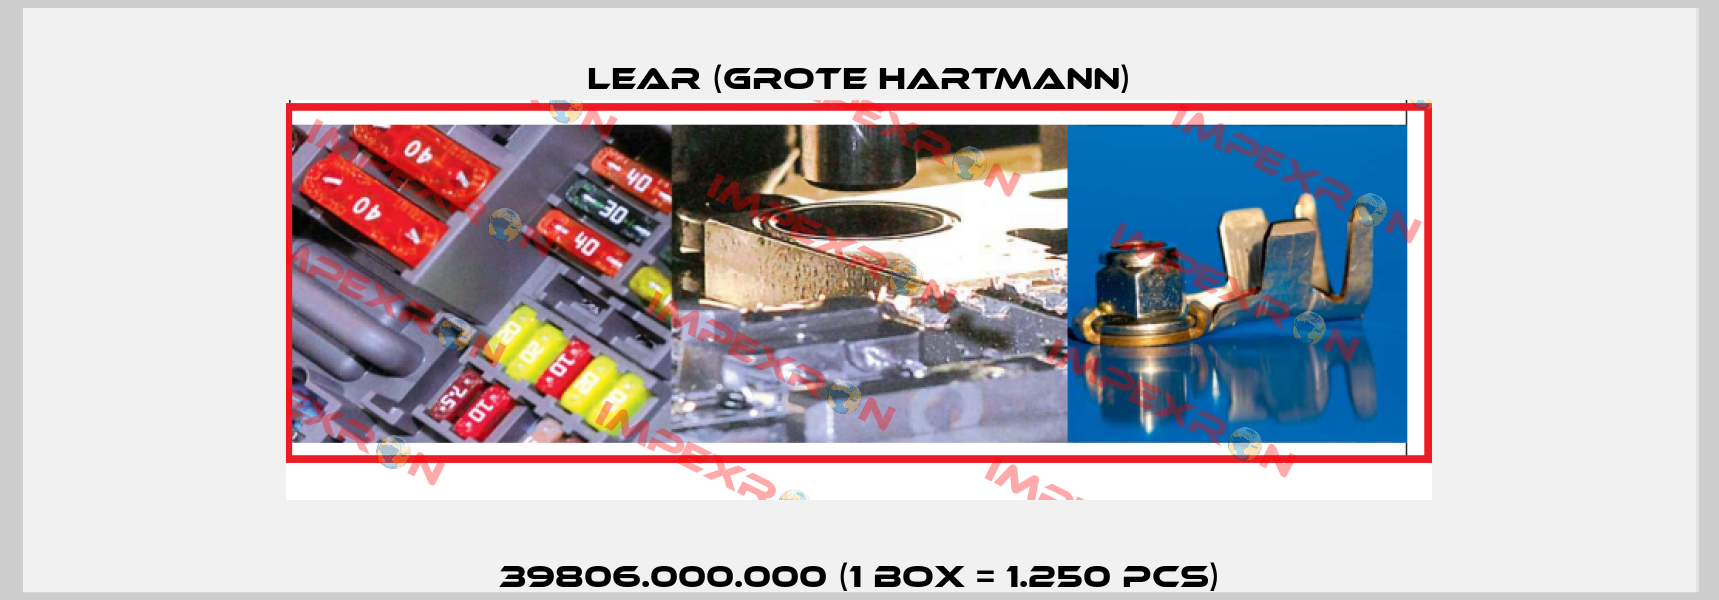 39806.000.000 (1 box = 1.250 pcs) Lear (Grote Hartmann)